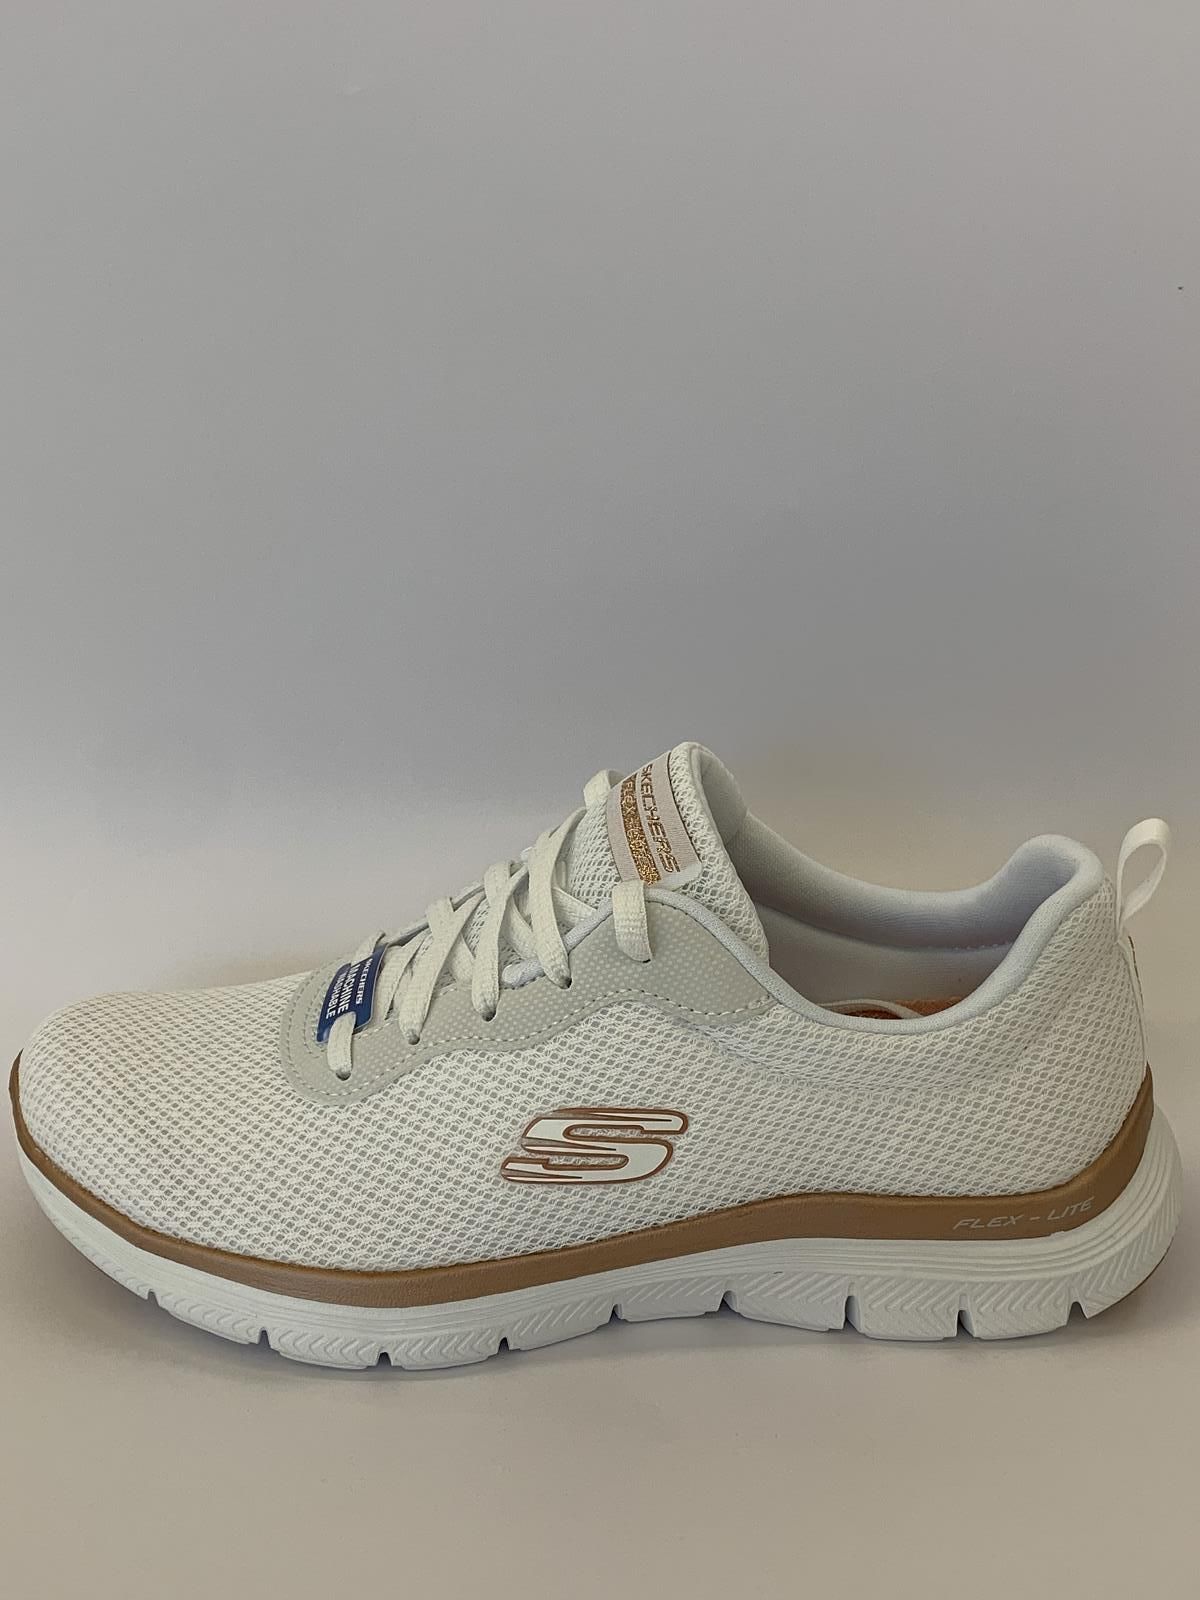 Skechers Sneaker Wit+kleur dames (Runner Mesh - 149303) - Schoenen Luca